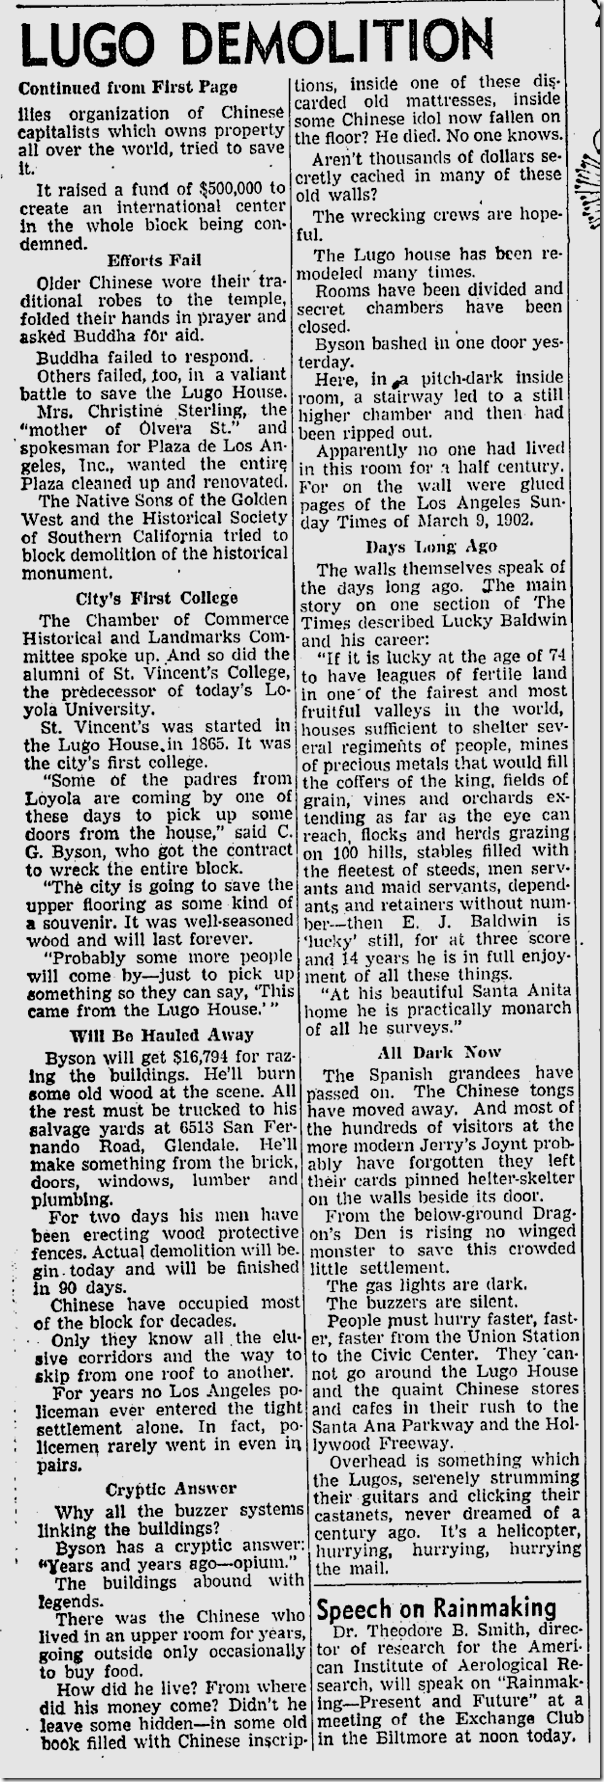 Feb. 7, 1951, Lugo Adobe Destroyed 